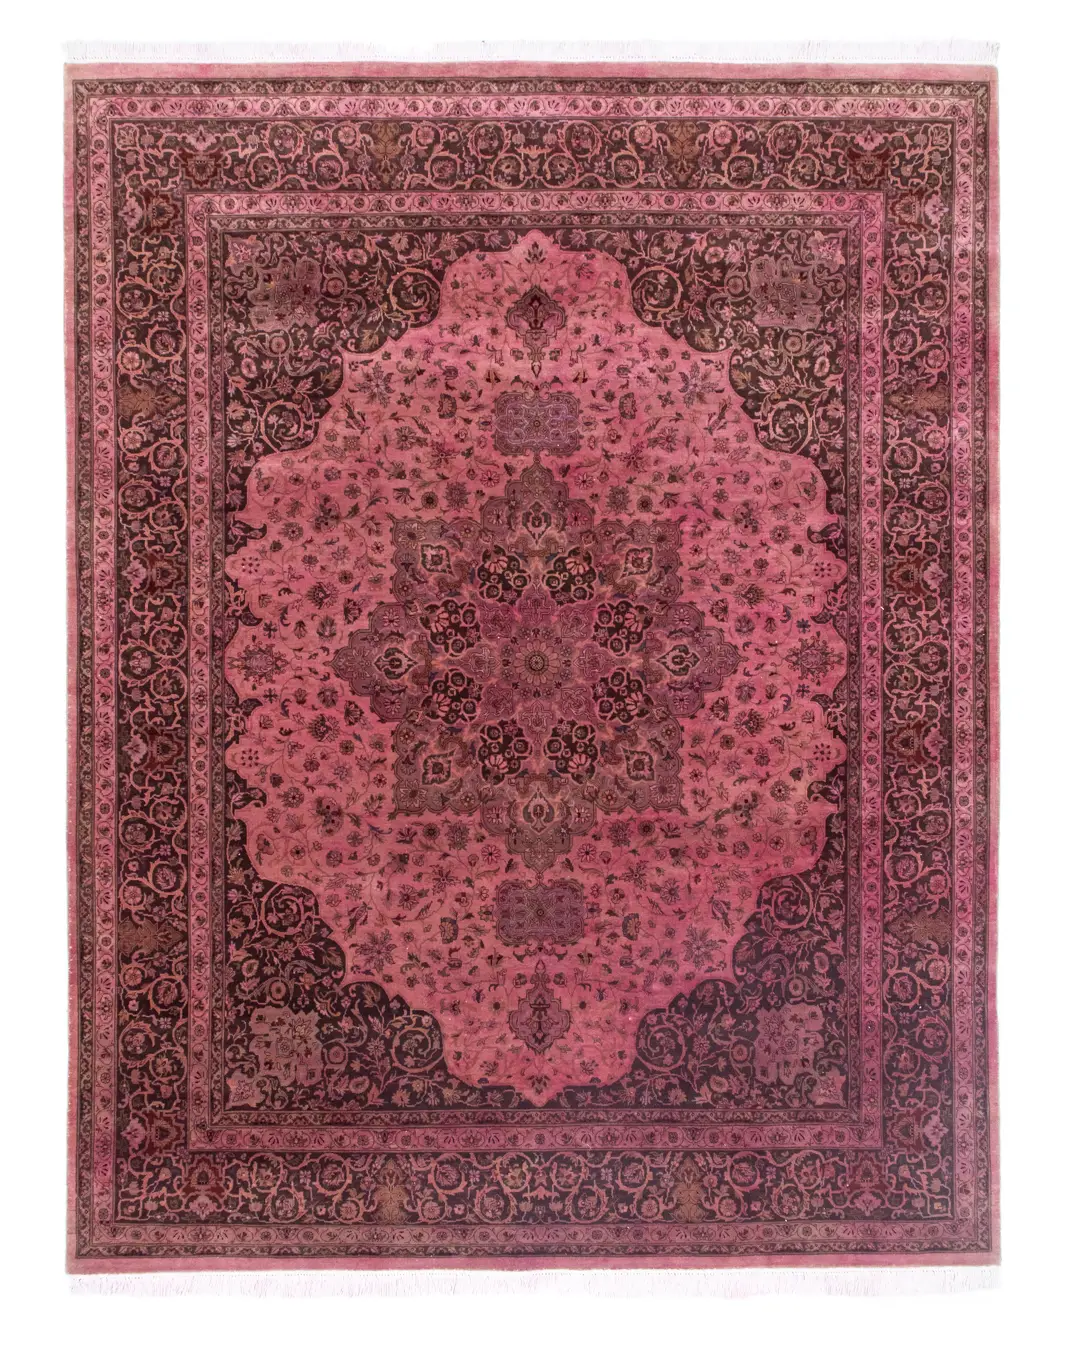 Vintage Teppich - 304 x 239 cm - rosa